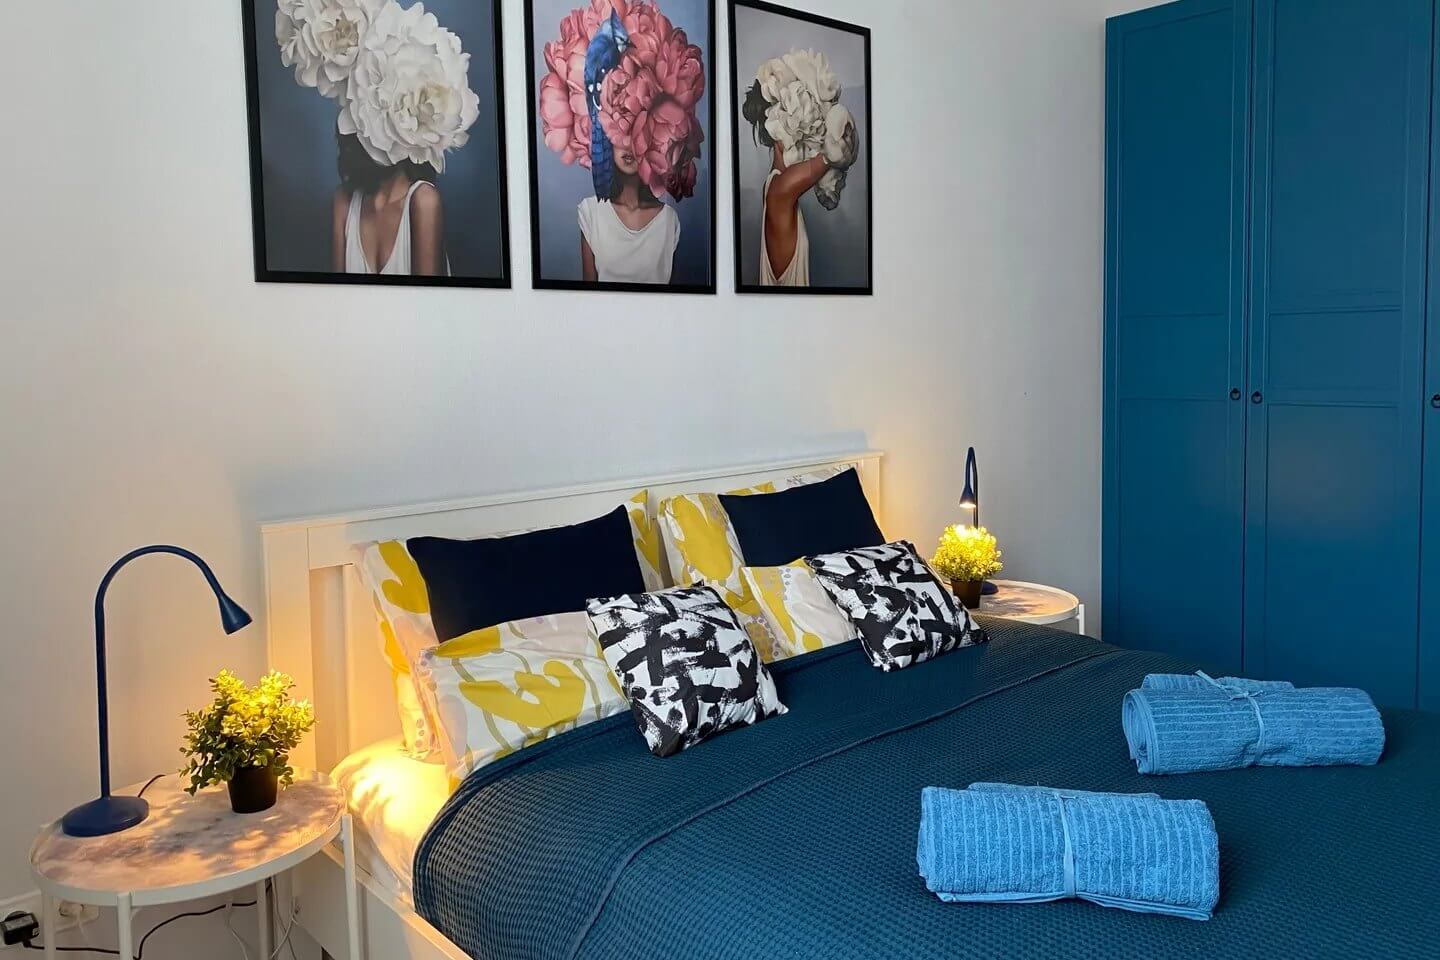 Спальное место: кровать с подушками, картины на стене, шкаф и покрывало "морского" синего цвета.